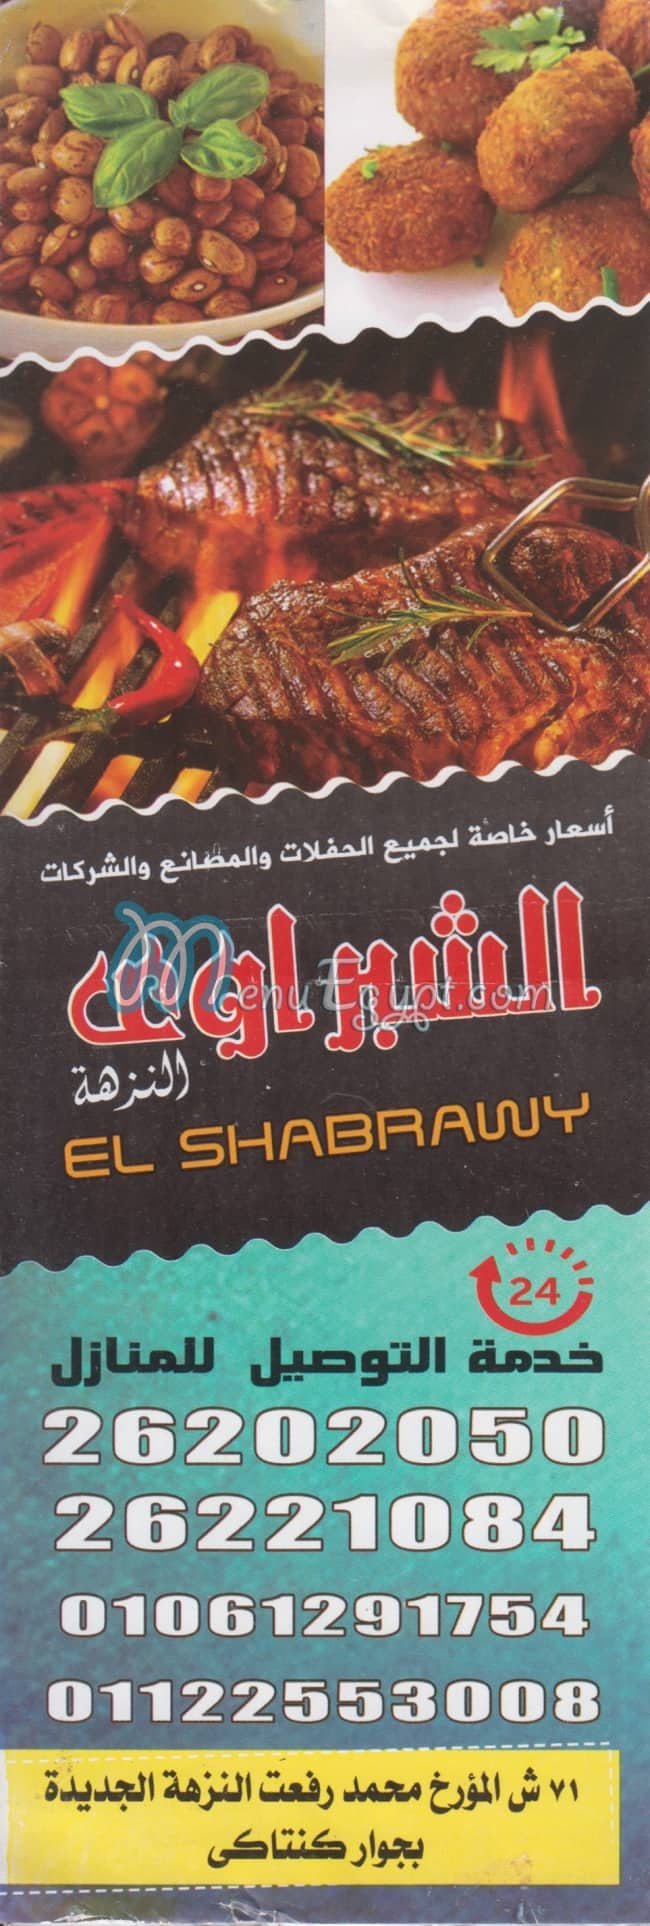 AL SHABRAWY ELNUZHA menu